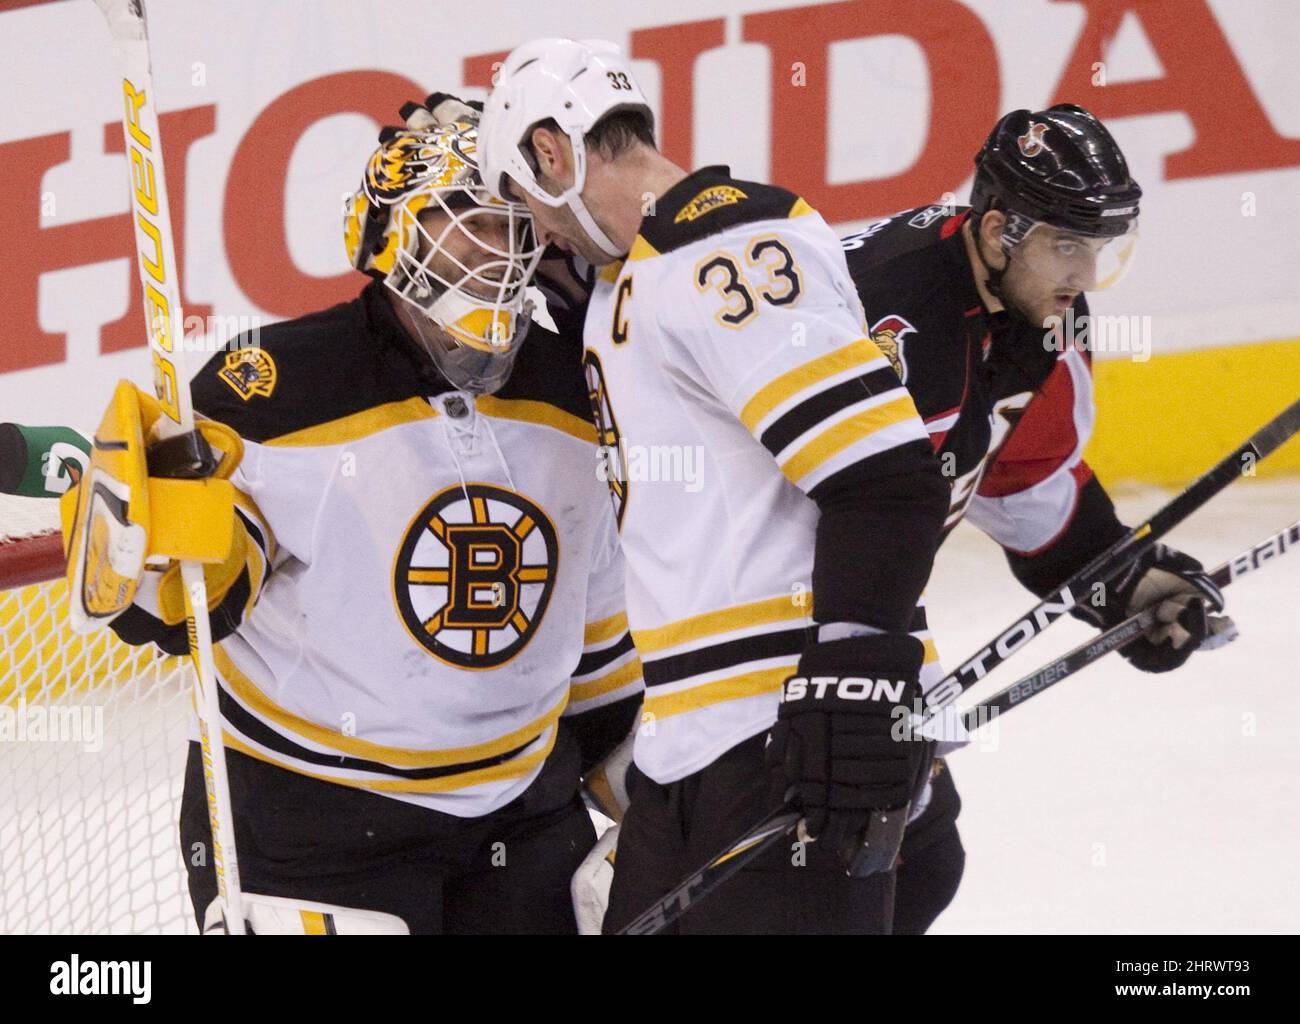 Senators' Daniel Alfredsson, Bruins' Zdeno Chara named NHL all-star captains